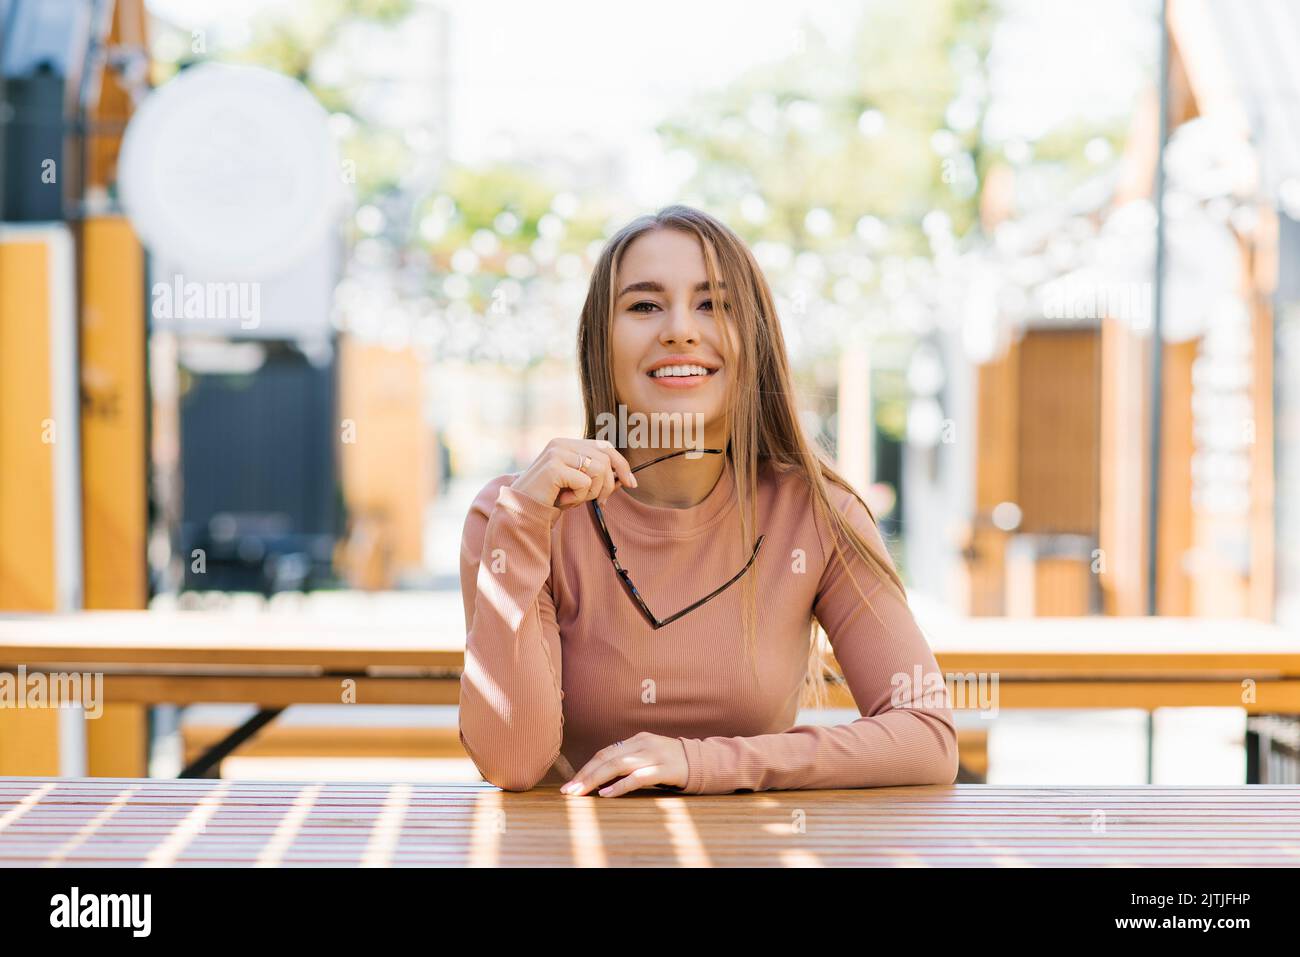 Retrato de una mujer sonriente feliz sosteniendo gafas de sol en la ciudad en verano en una cafetería y esperando un pedido Foto de stock